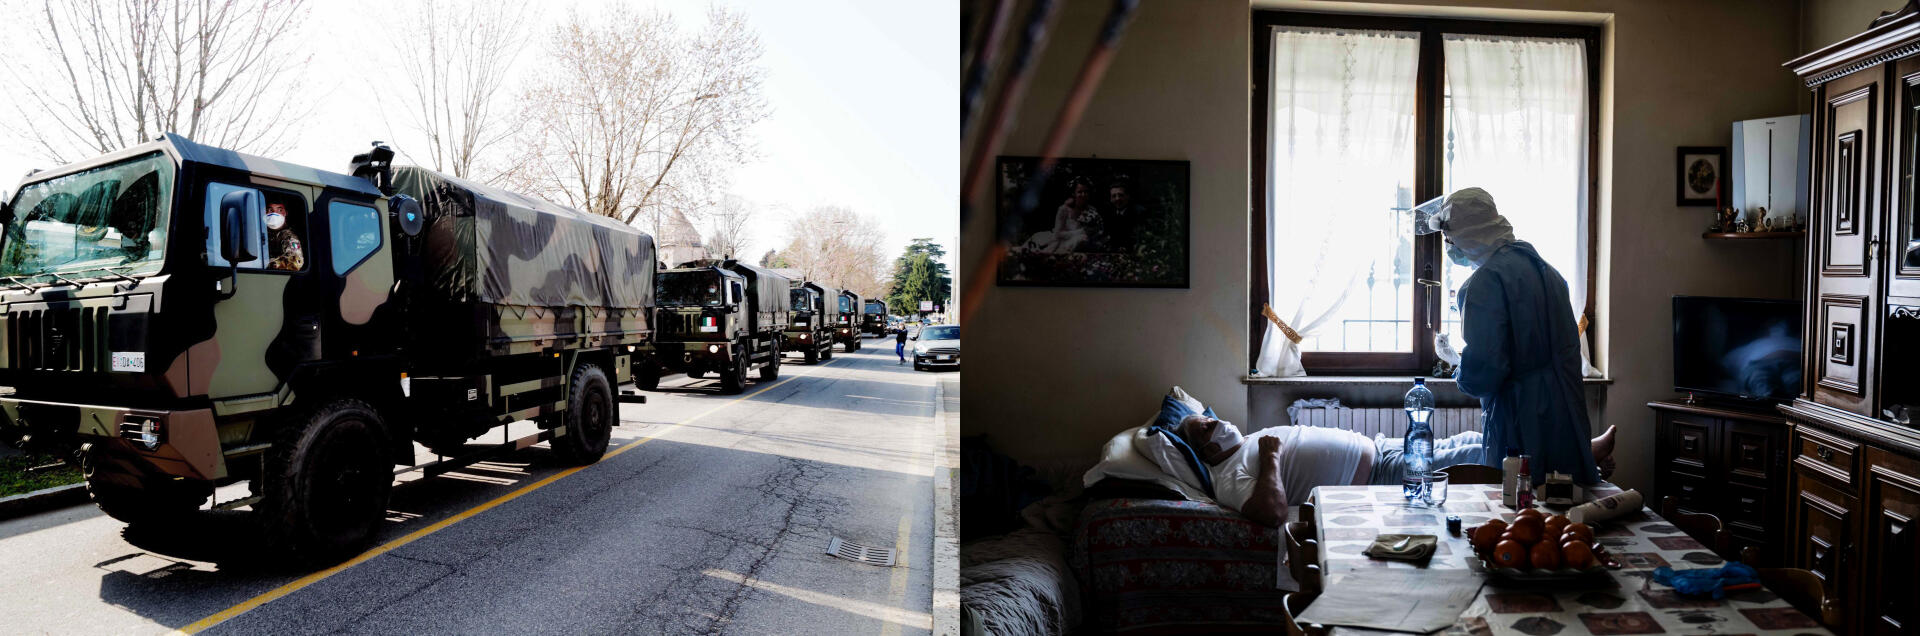 21 mars 2020. Des convois de camions militaires assurent le transport des corps des victimes du Covid-19, à Bergame, en Italie. Le 16 avril, près de Codogno, « épicentre » de l’épidémie dans le pays, un médecin rend visite à un malade du Covid-19 à son domicile.